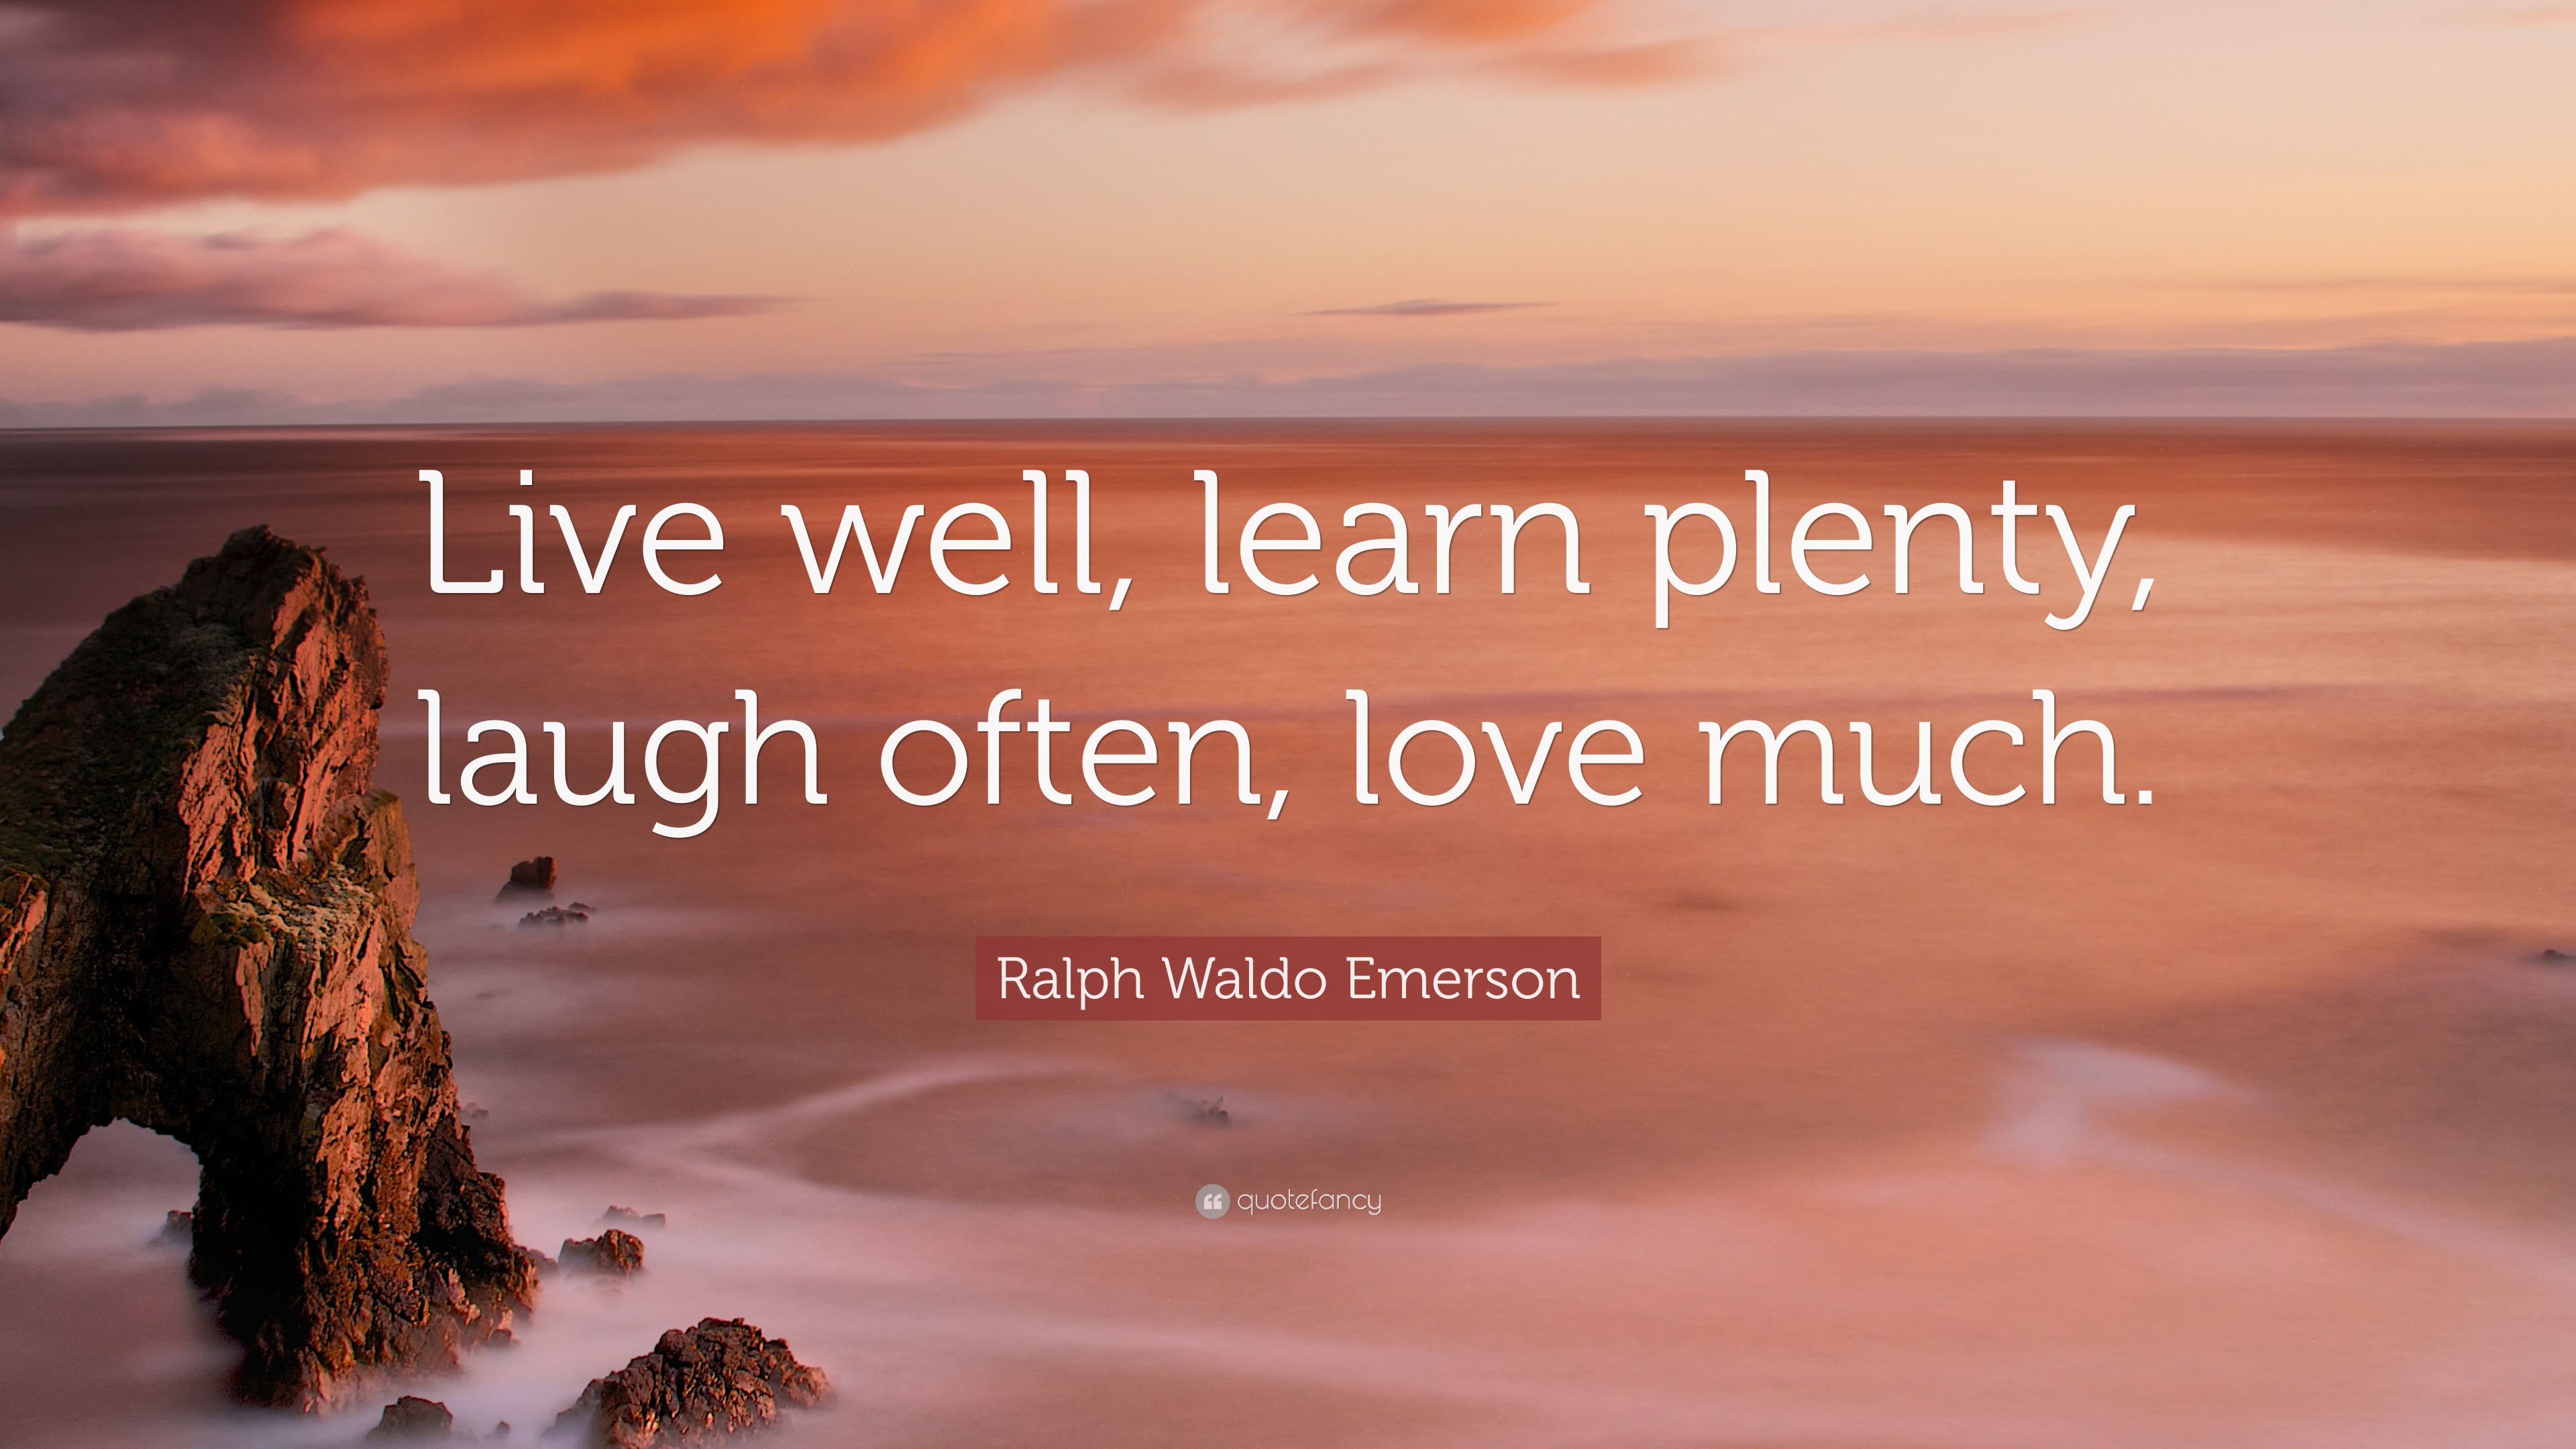 4743019 Ralph Waldo Emerson Quote Live well learn plenty laugh often love